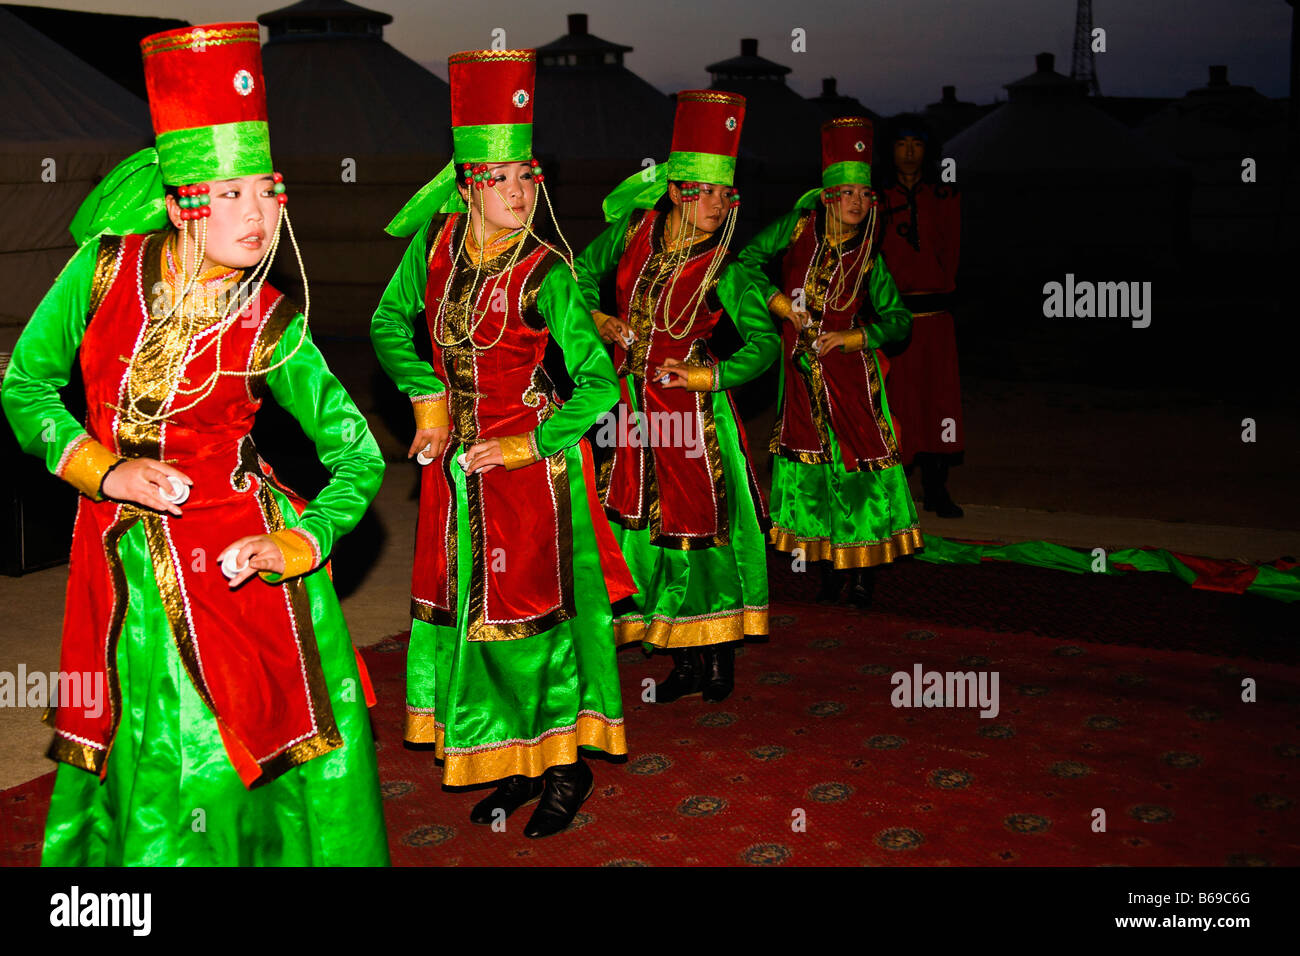 Four young women dancing, Inner Mongolia, China Stock Photo